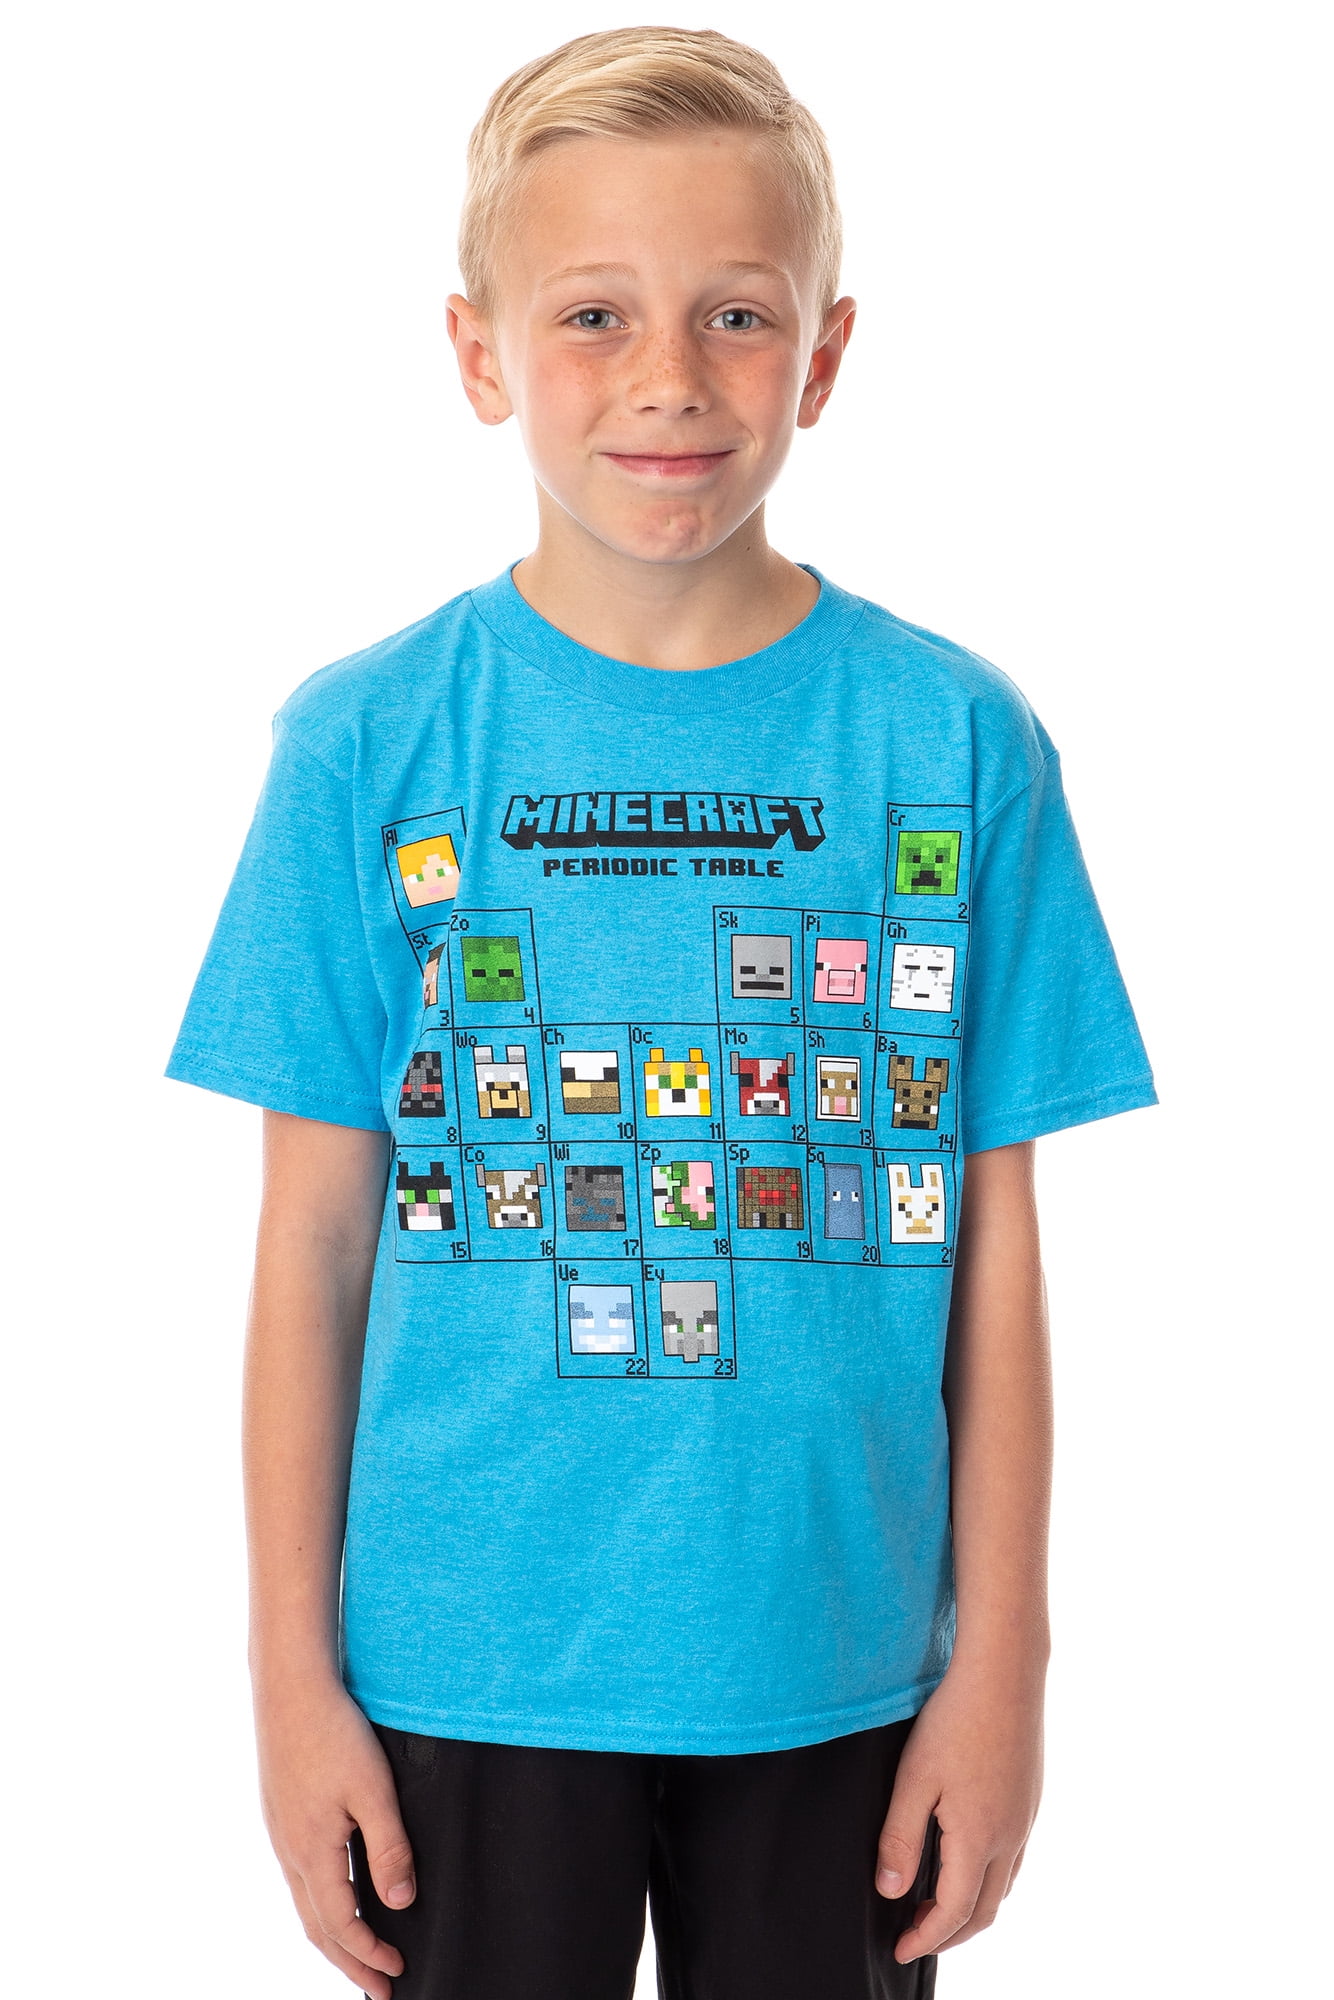 Minecraft Side Logo Big Boys Youth T-Shirt Licensed 